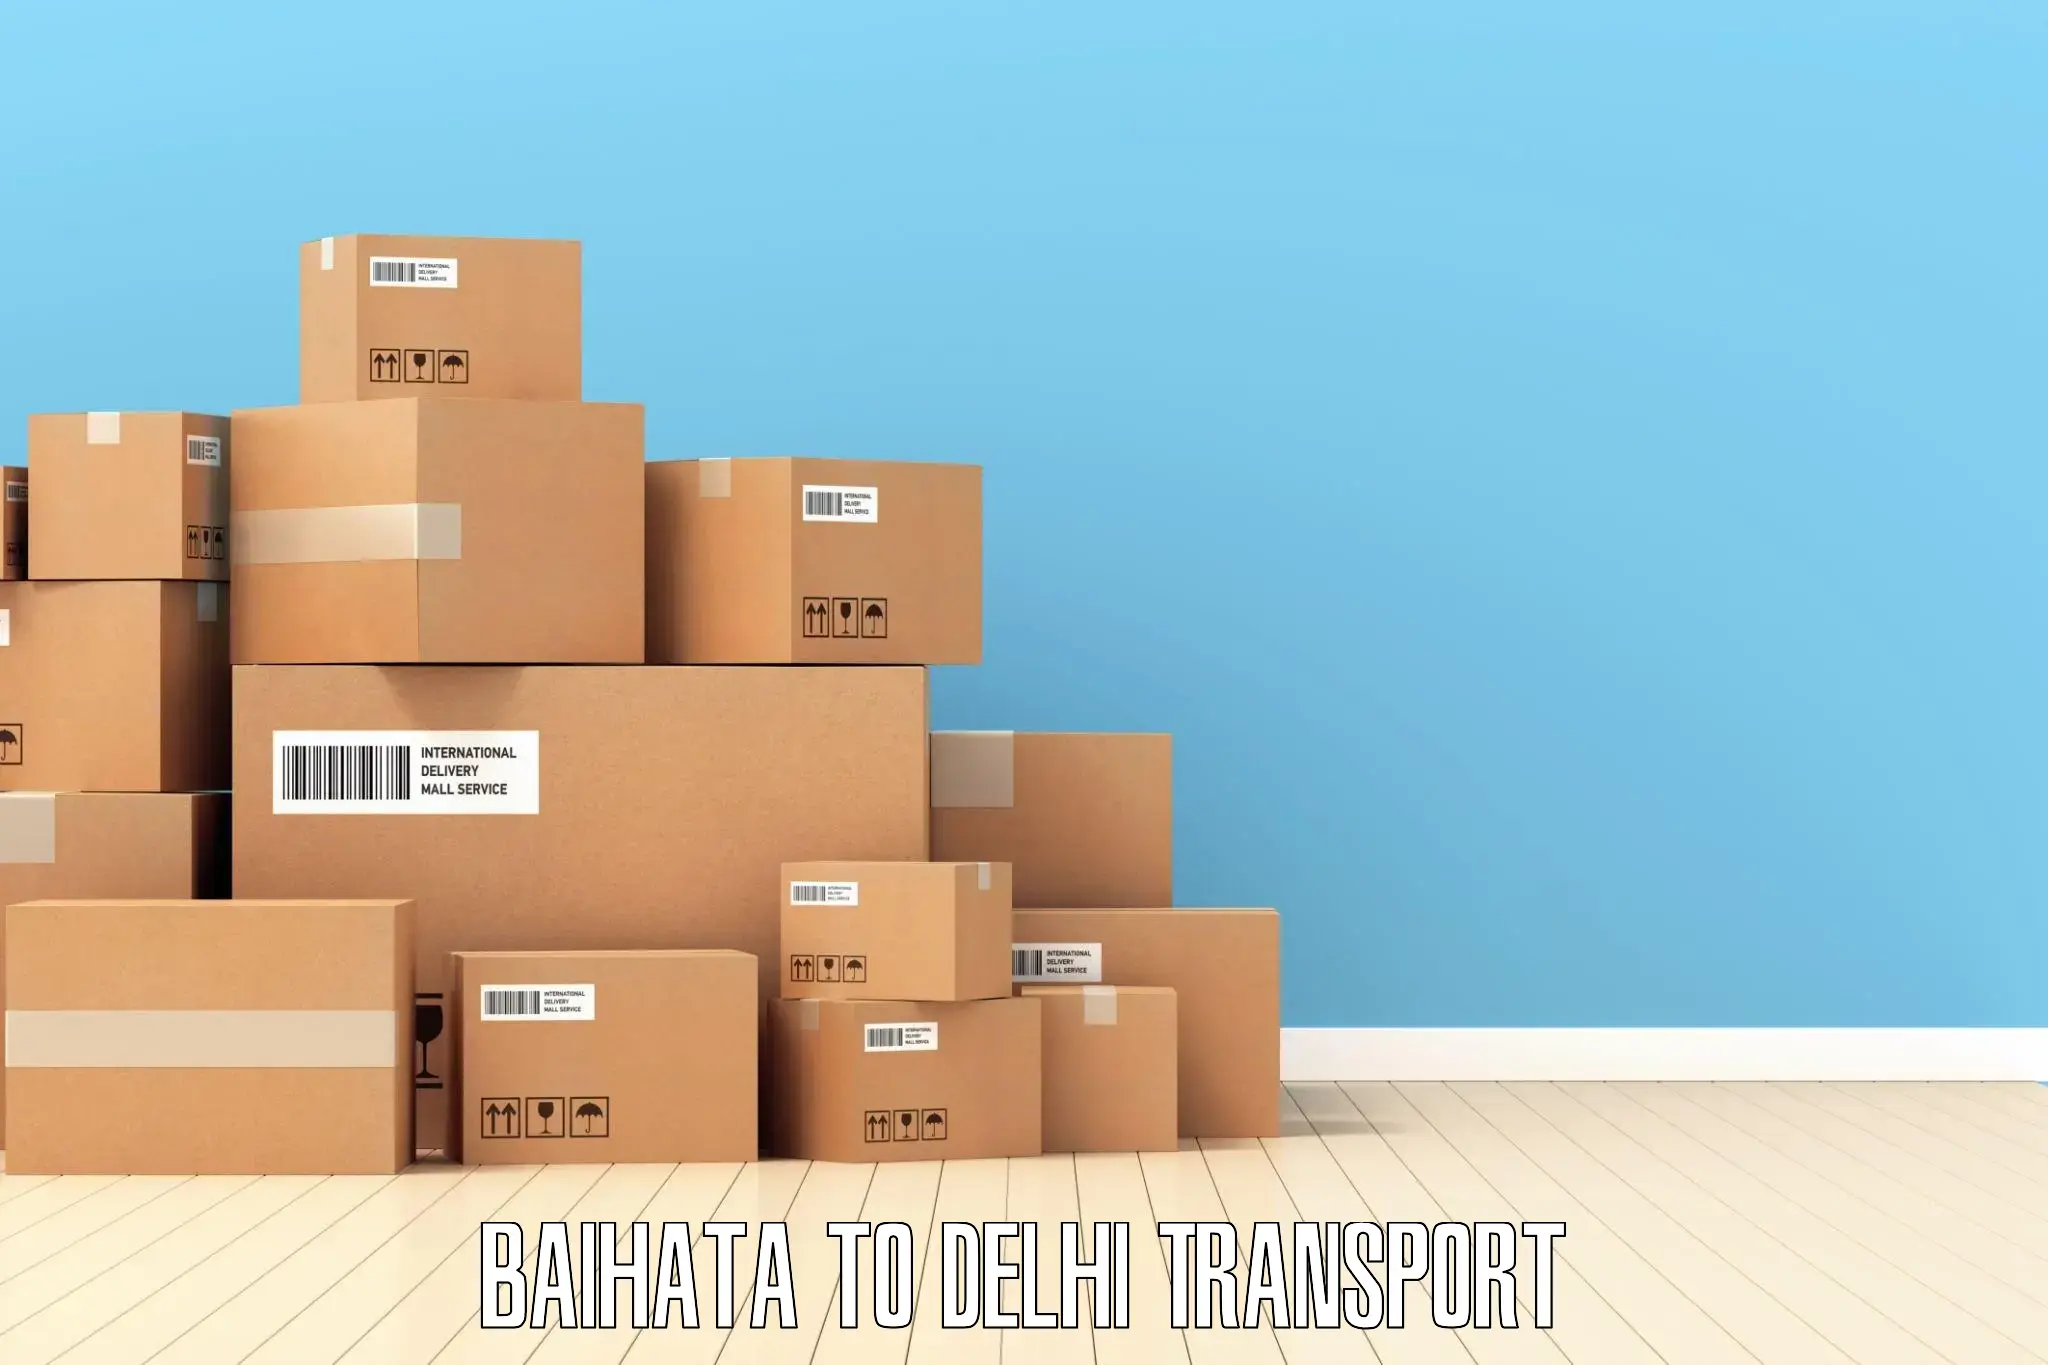 Daily transport service Baihata to Delhi